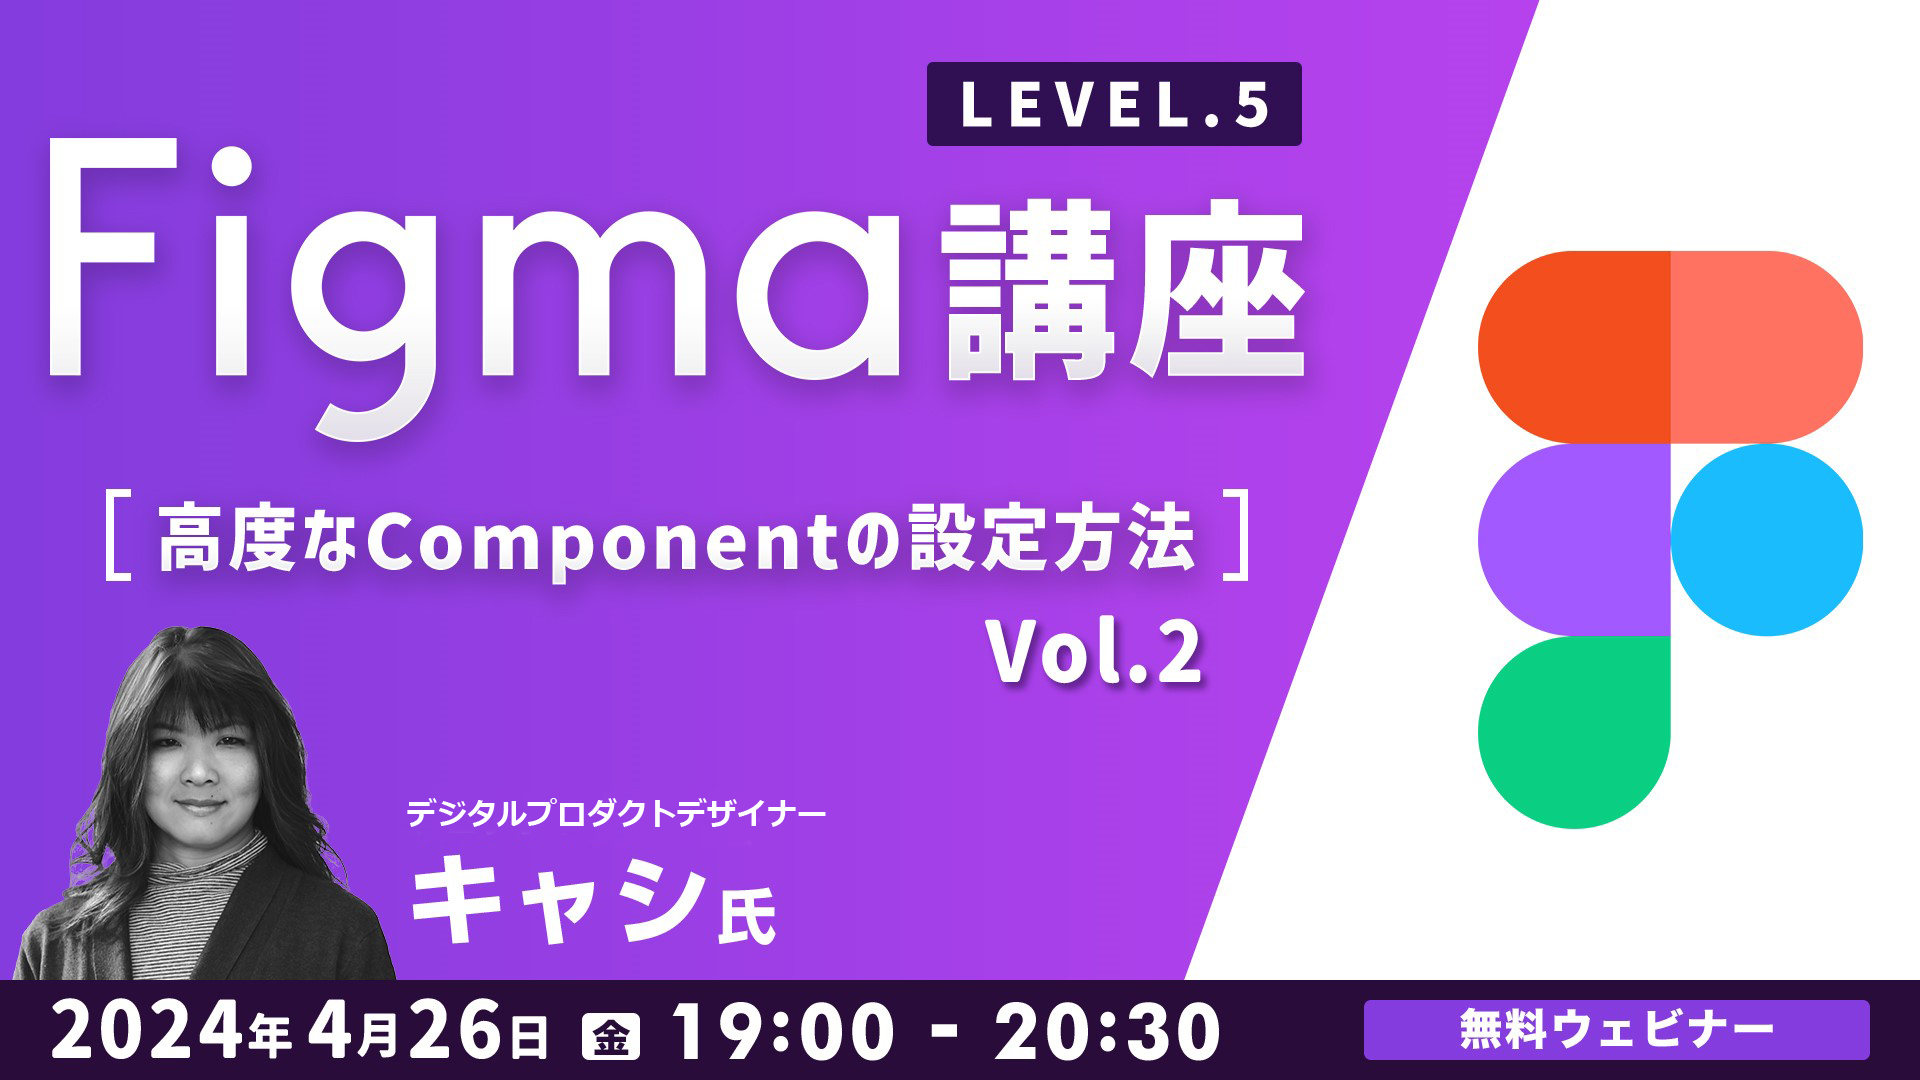 23438_4/26実施:Figma講座LEVEL.５～高度なComponentの設定方法～Vol.2